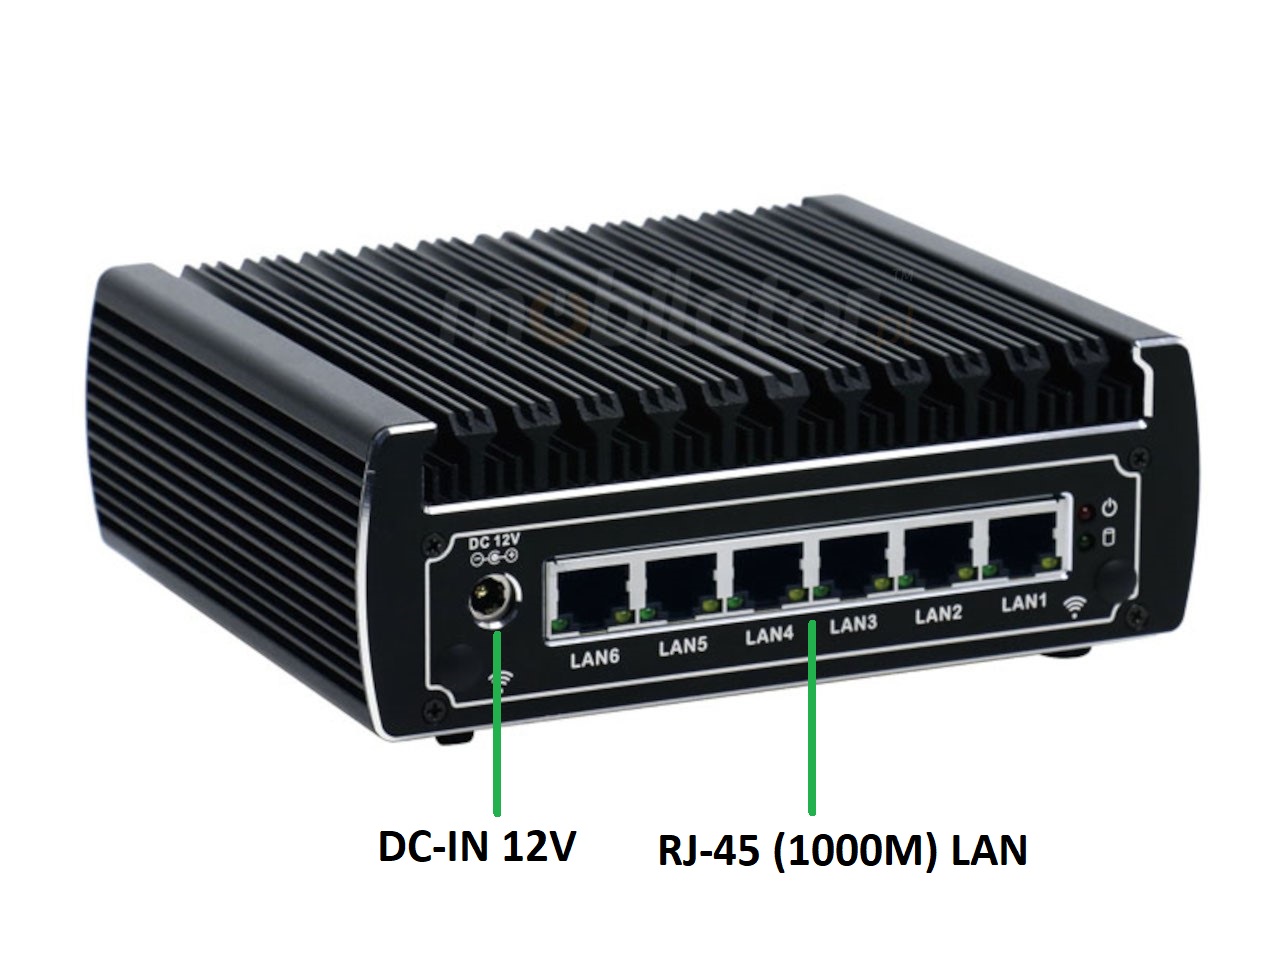   IBOX N133  v.14, zcza ty HDD DDR4 WIFI BLUETOOTH, przemysowy, may, szybki, niezawodny, fanless, industrial, small, LAN, INTEL i3